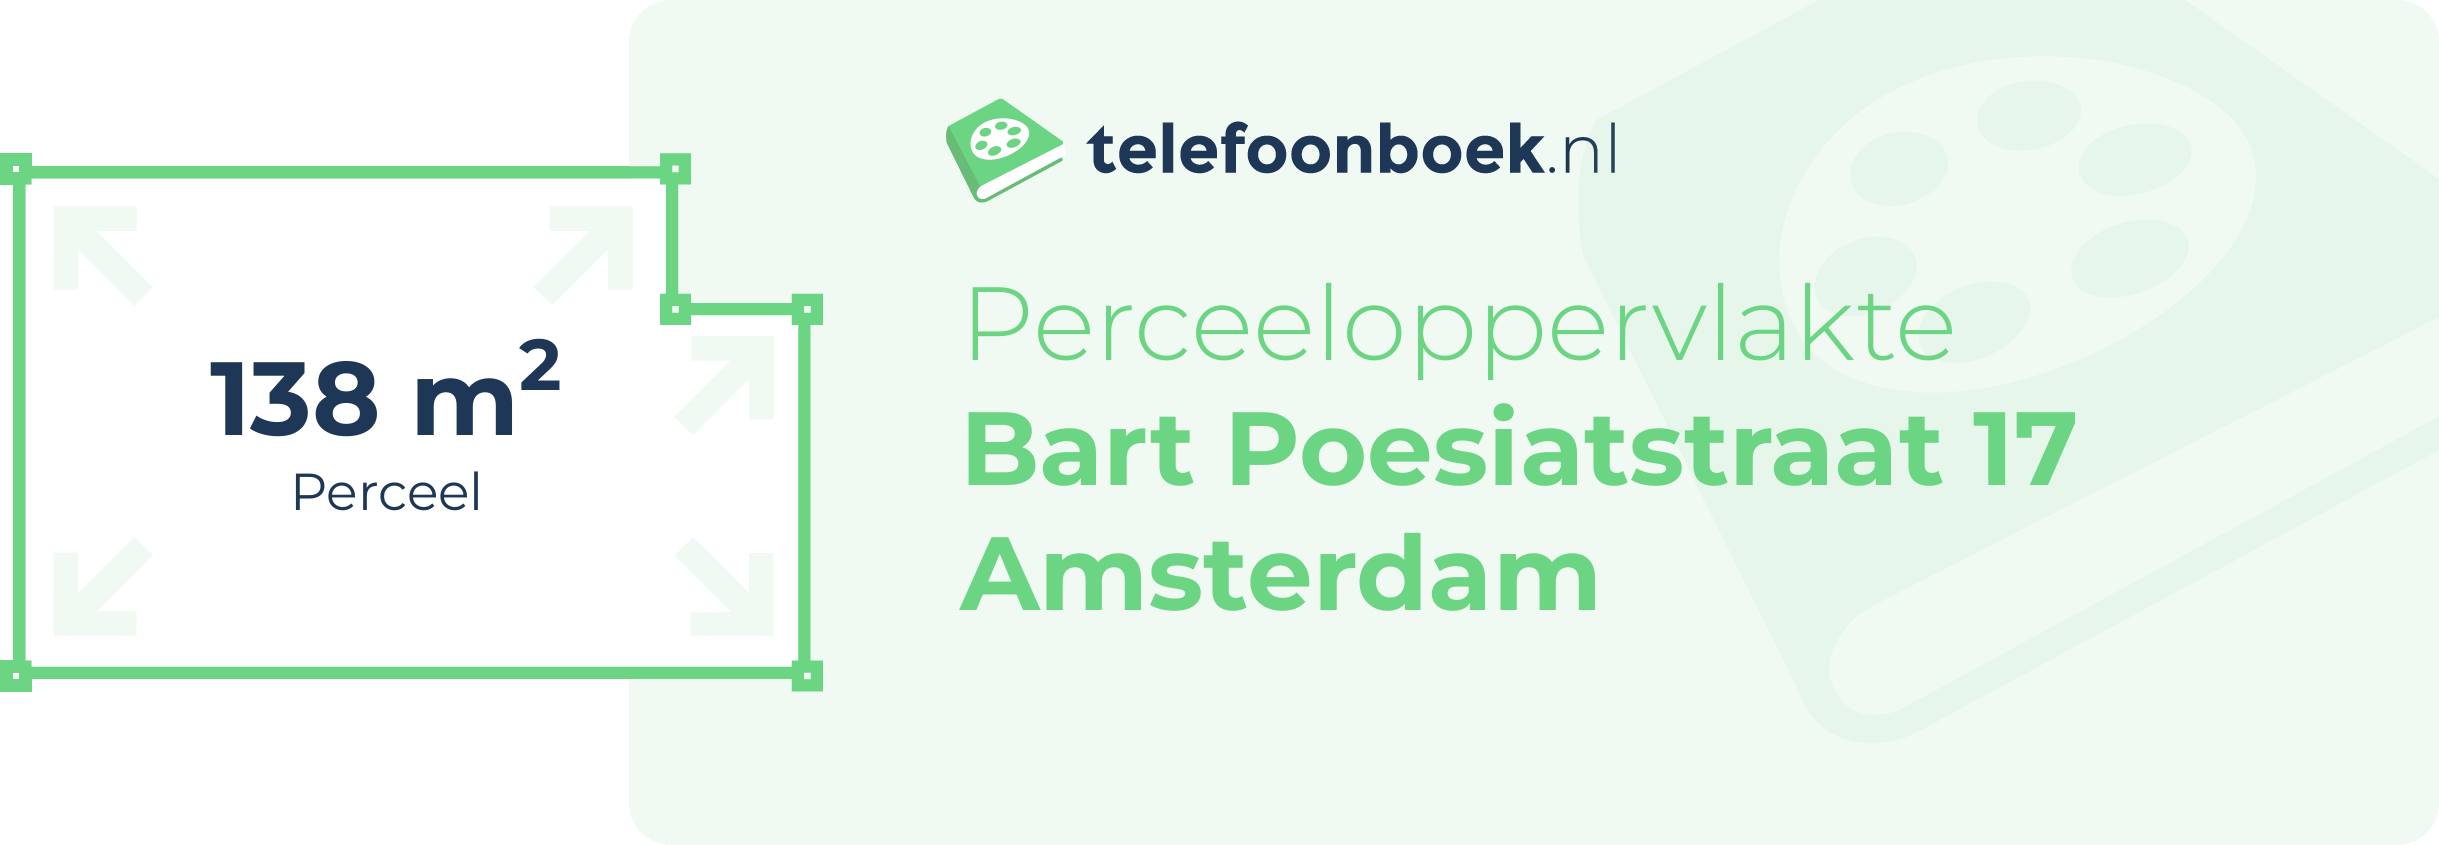 Perceeloppervlakte Bart Poesiatstraat 17 Amsterdam